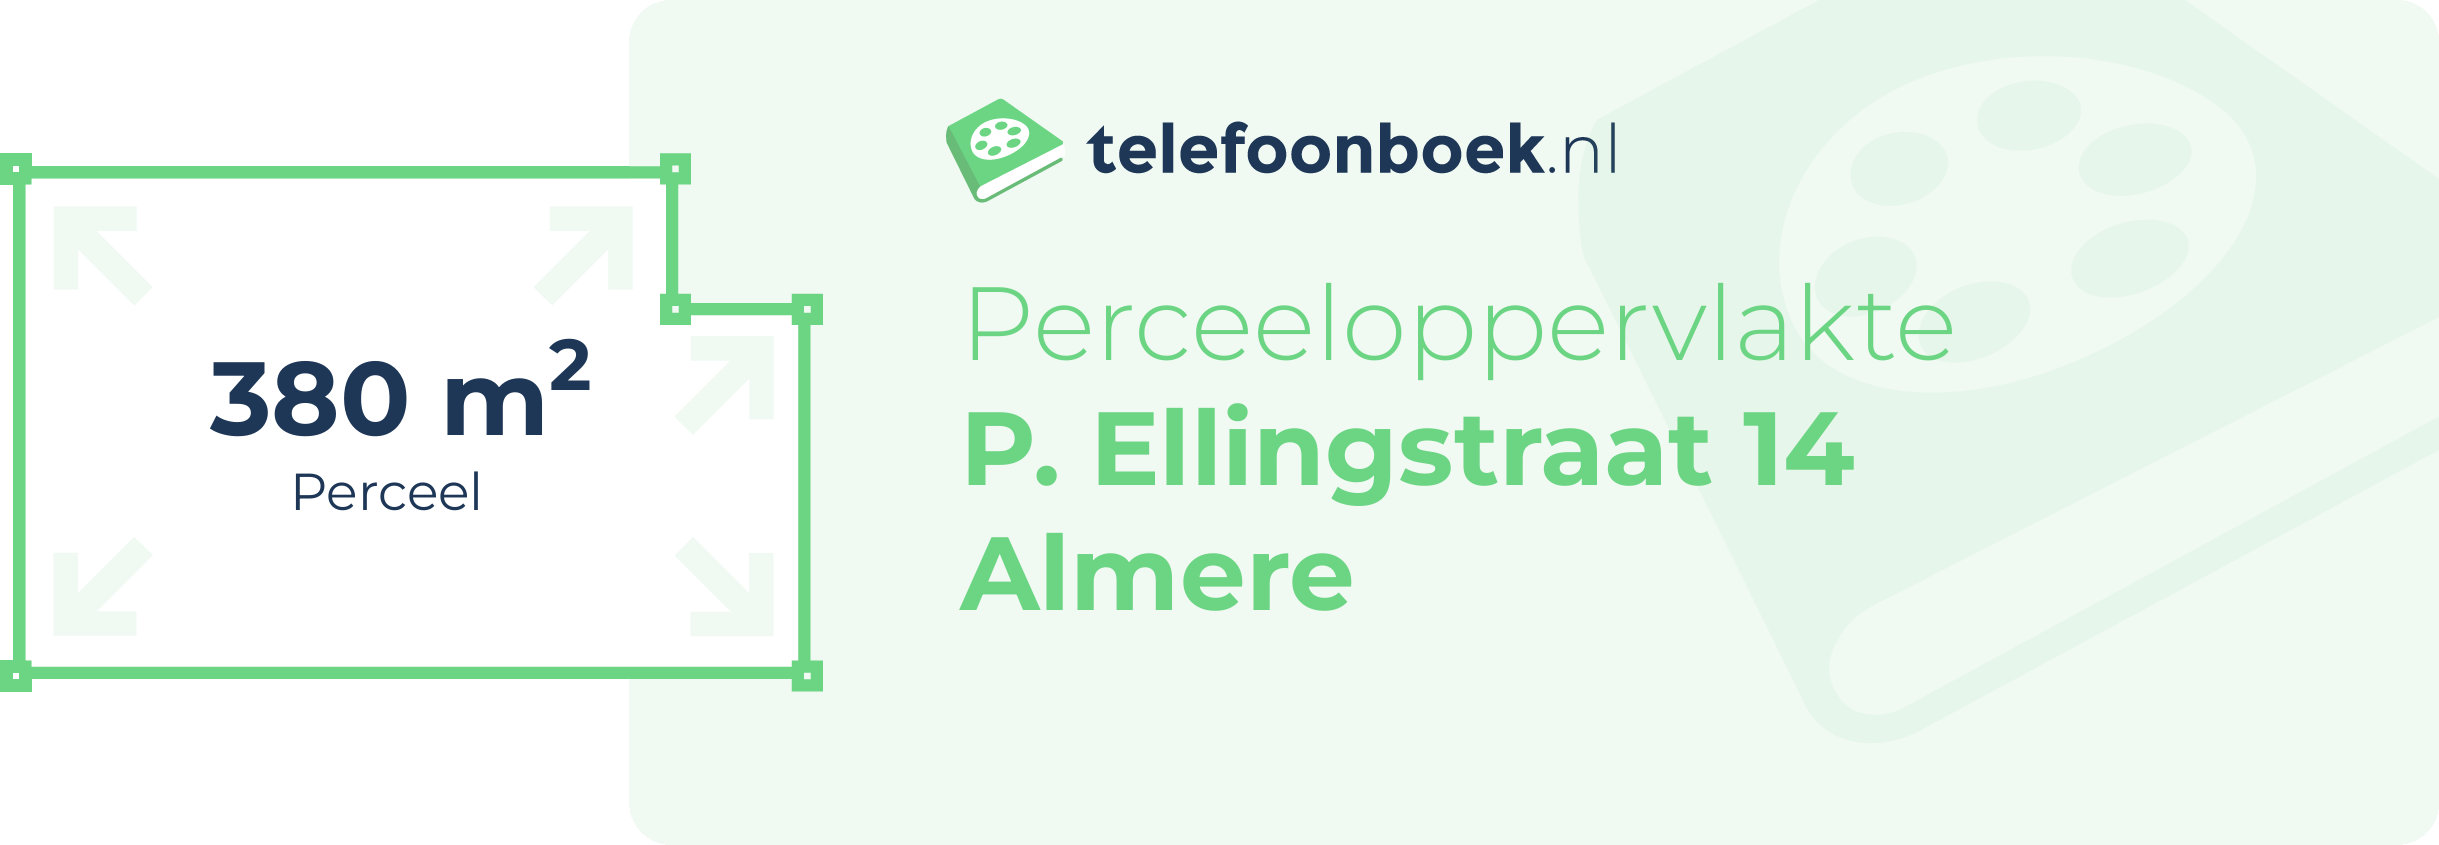 Perceeloppervlakte P. Ellingstraat 14 Almere